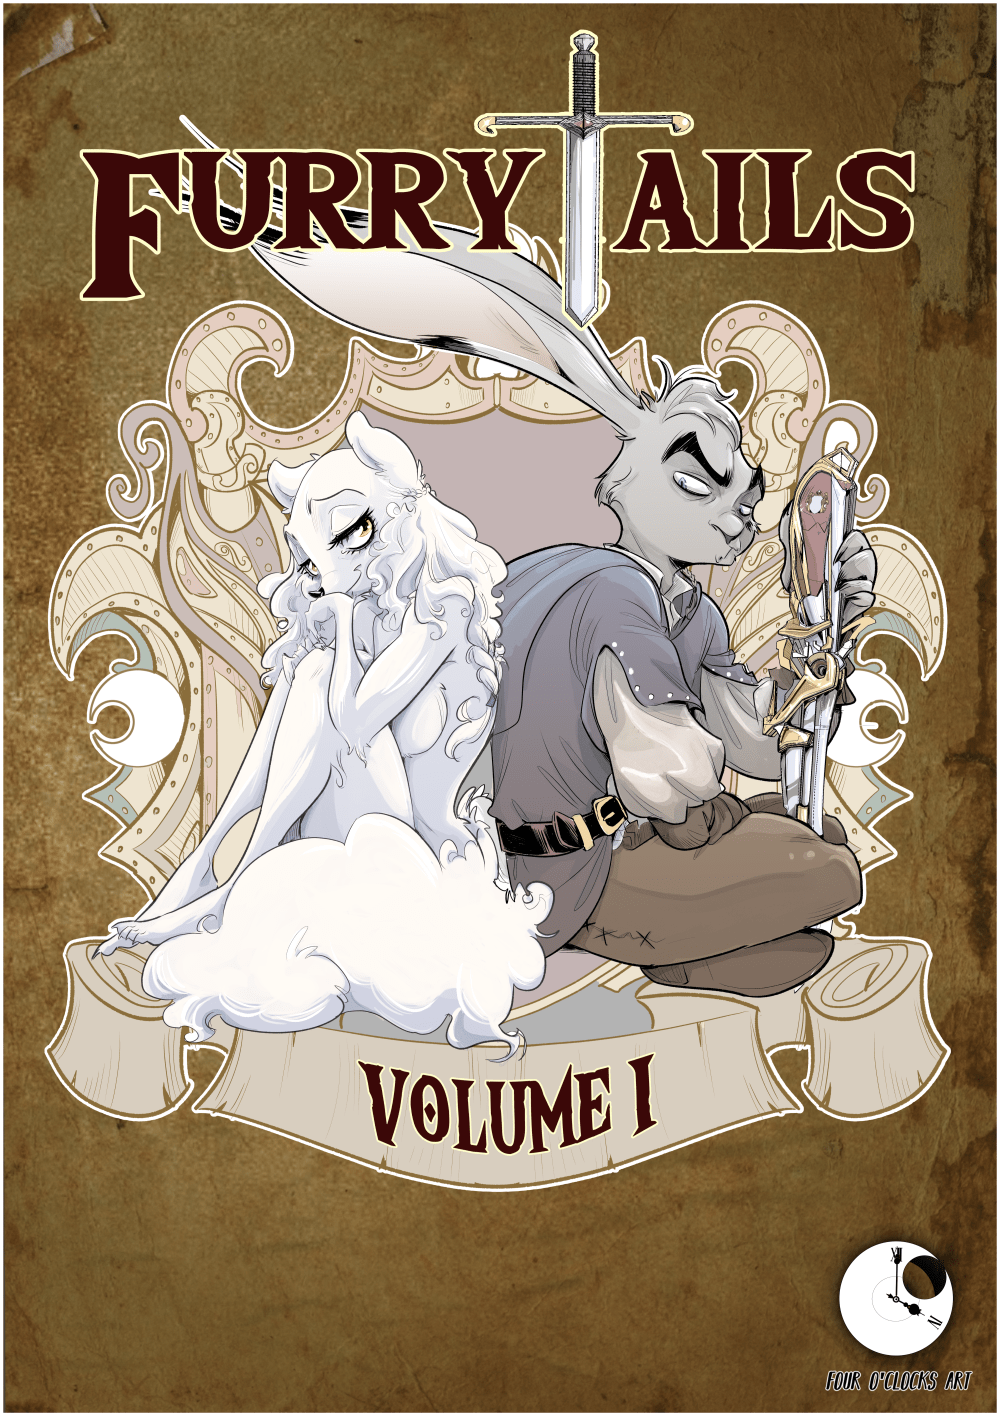 FurryTails Volume I is on sale!